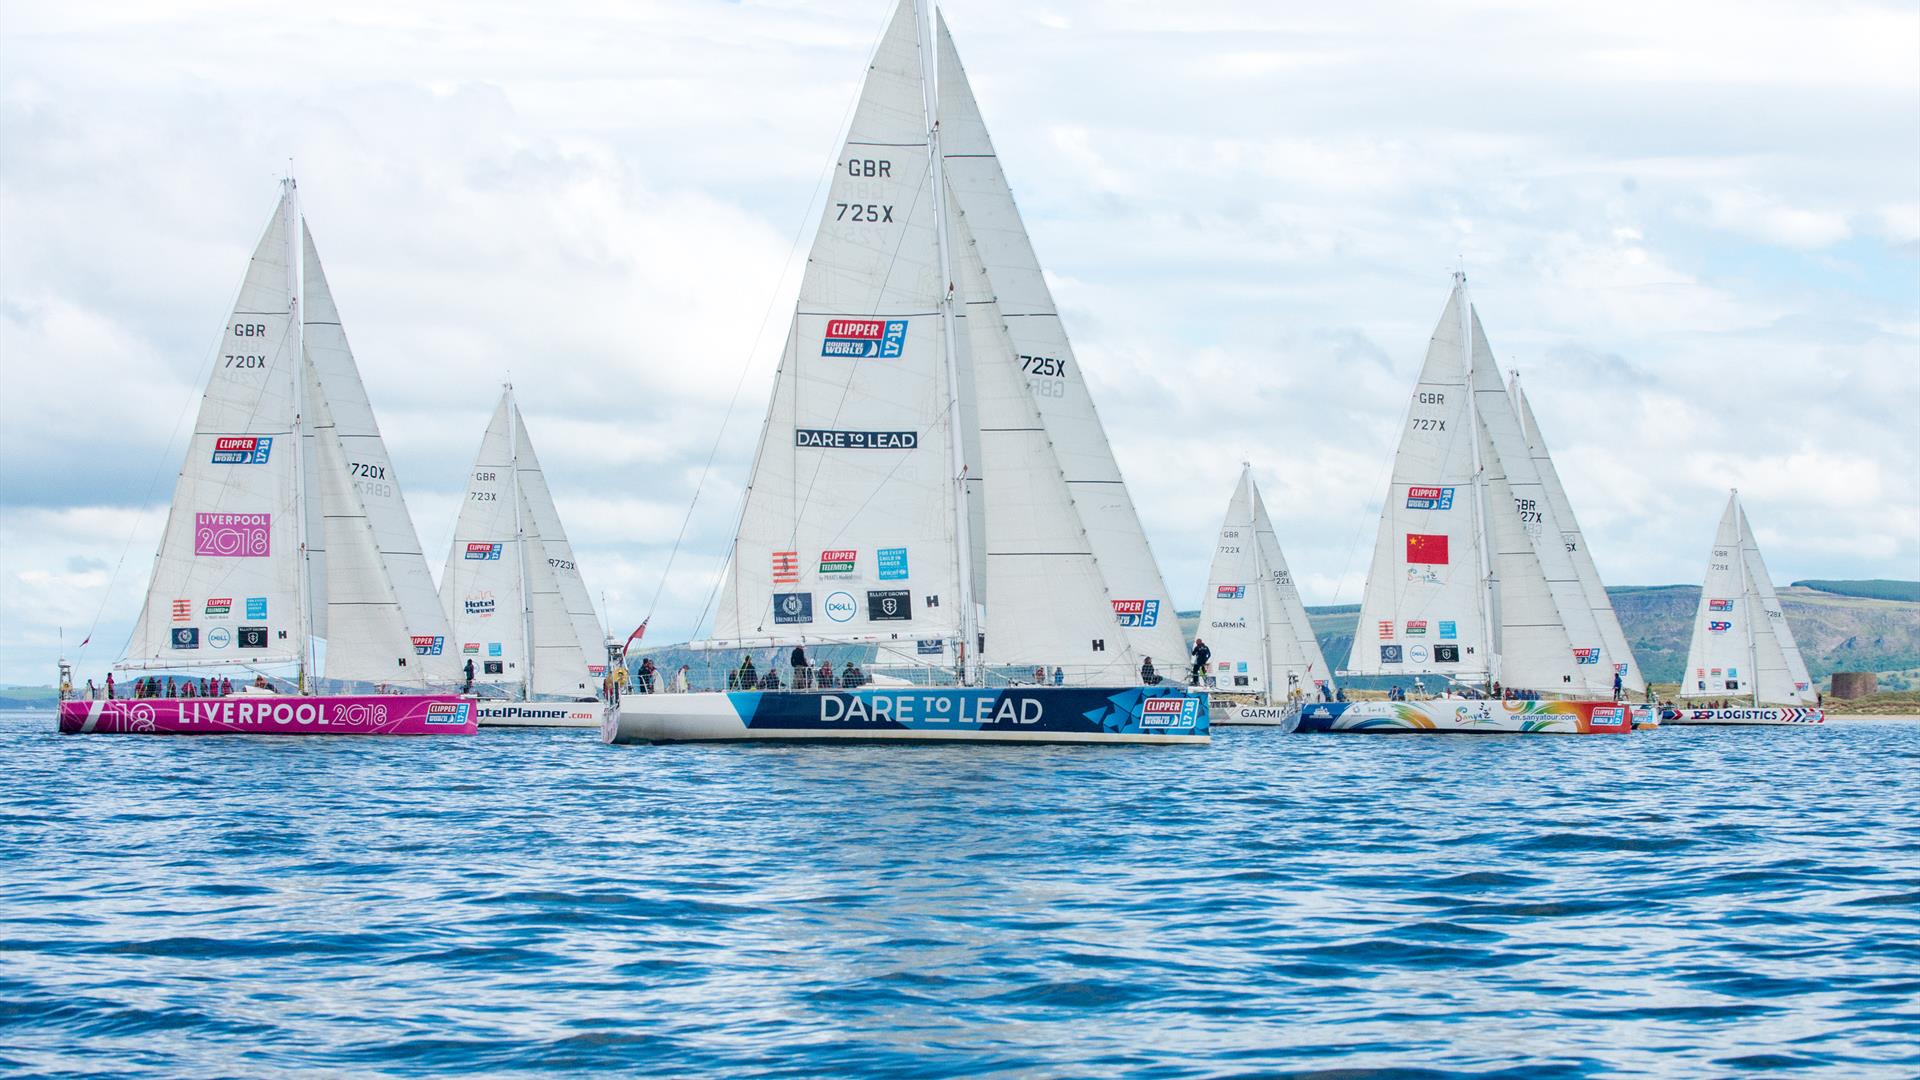 Foyle Maritime Festival: Clipper 19-20 Race Fleet Open Boat Tours